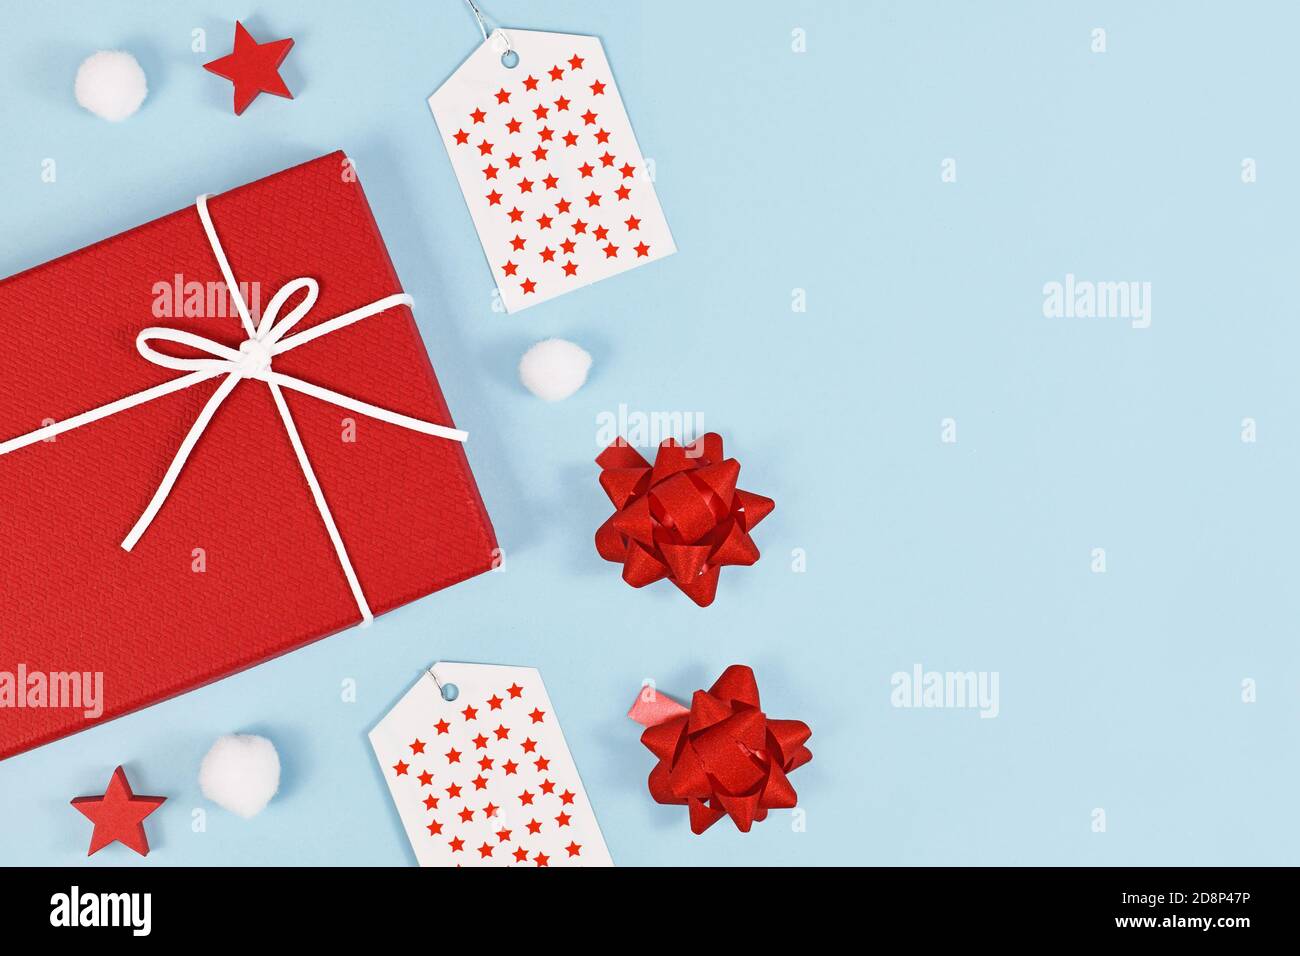 Piatto di Natale con scatole regalo rosse e robbons, labesl regalo e ornamento palla di neve su sfondo azzurro con spazio di copia sul lato Foto Stock